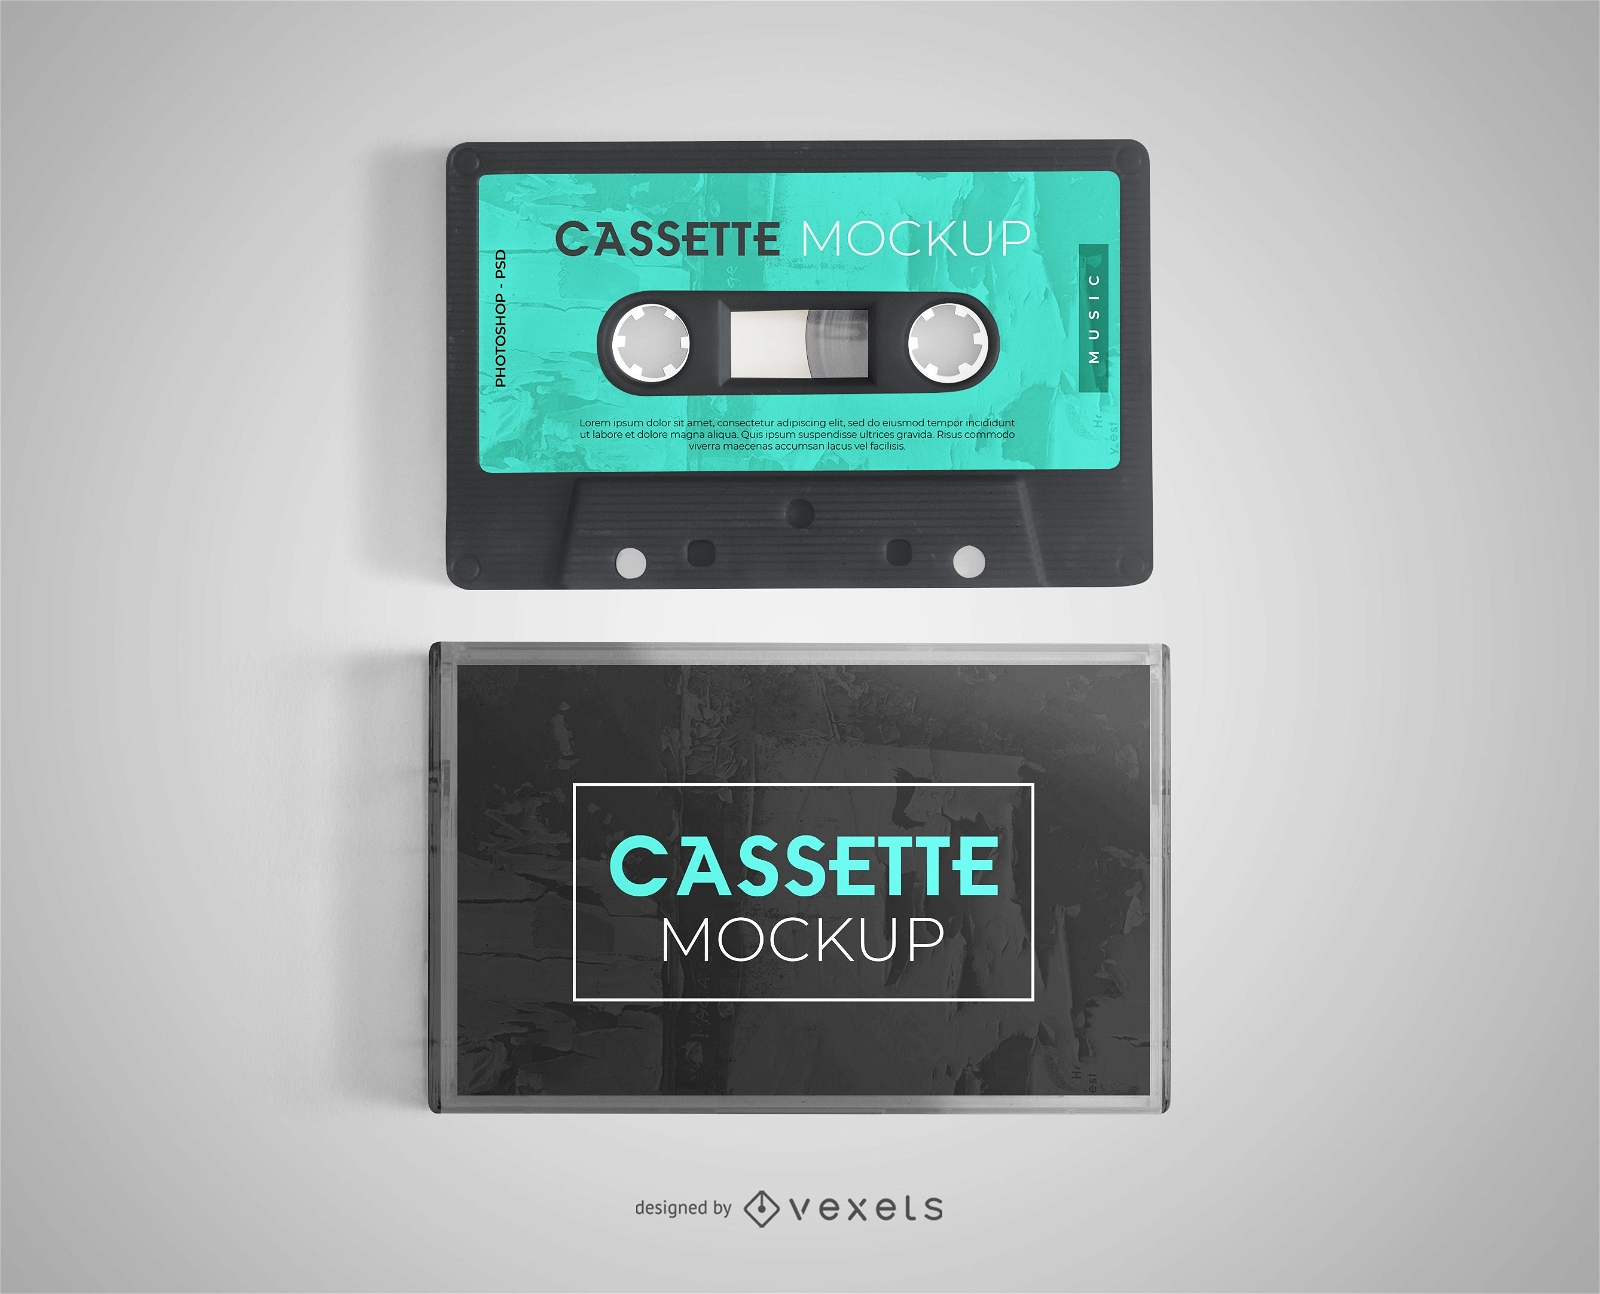 cassette-mockup-design-psd-mockup-download